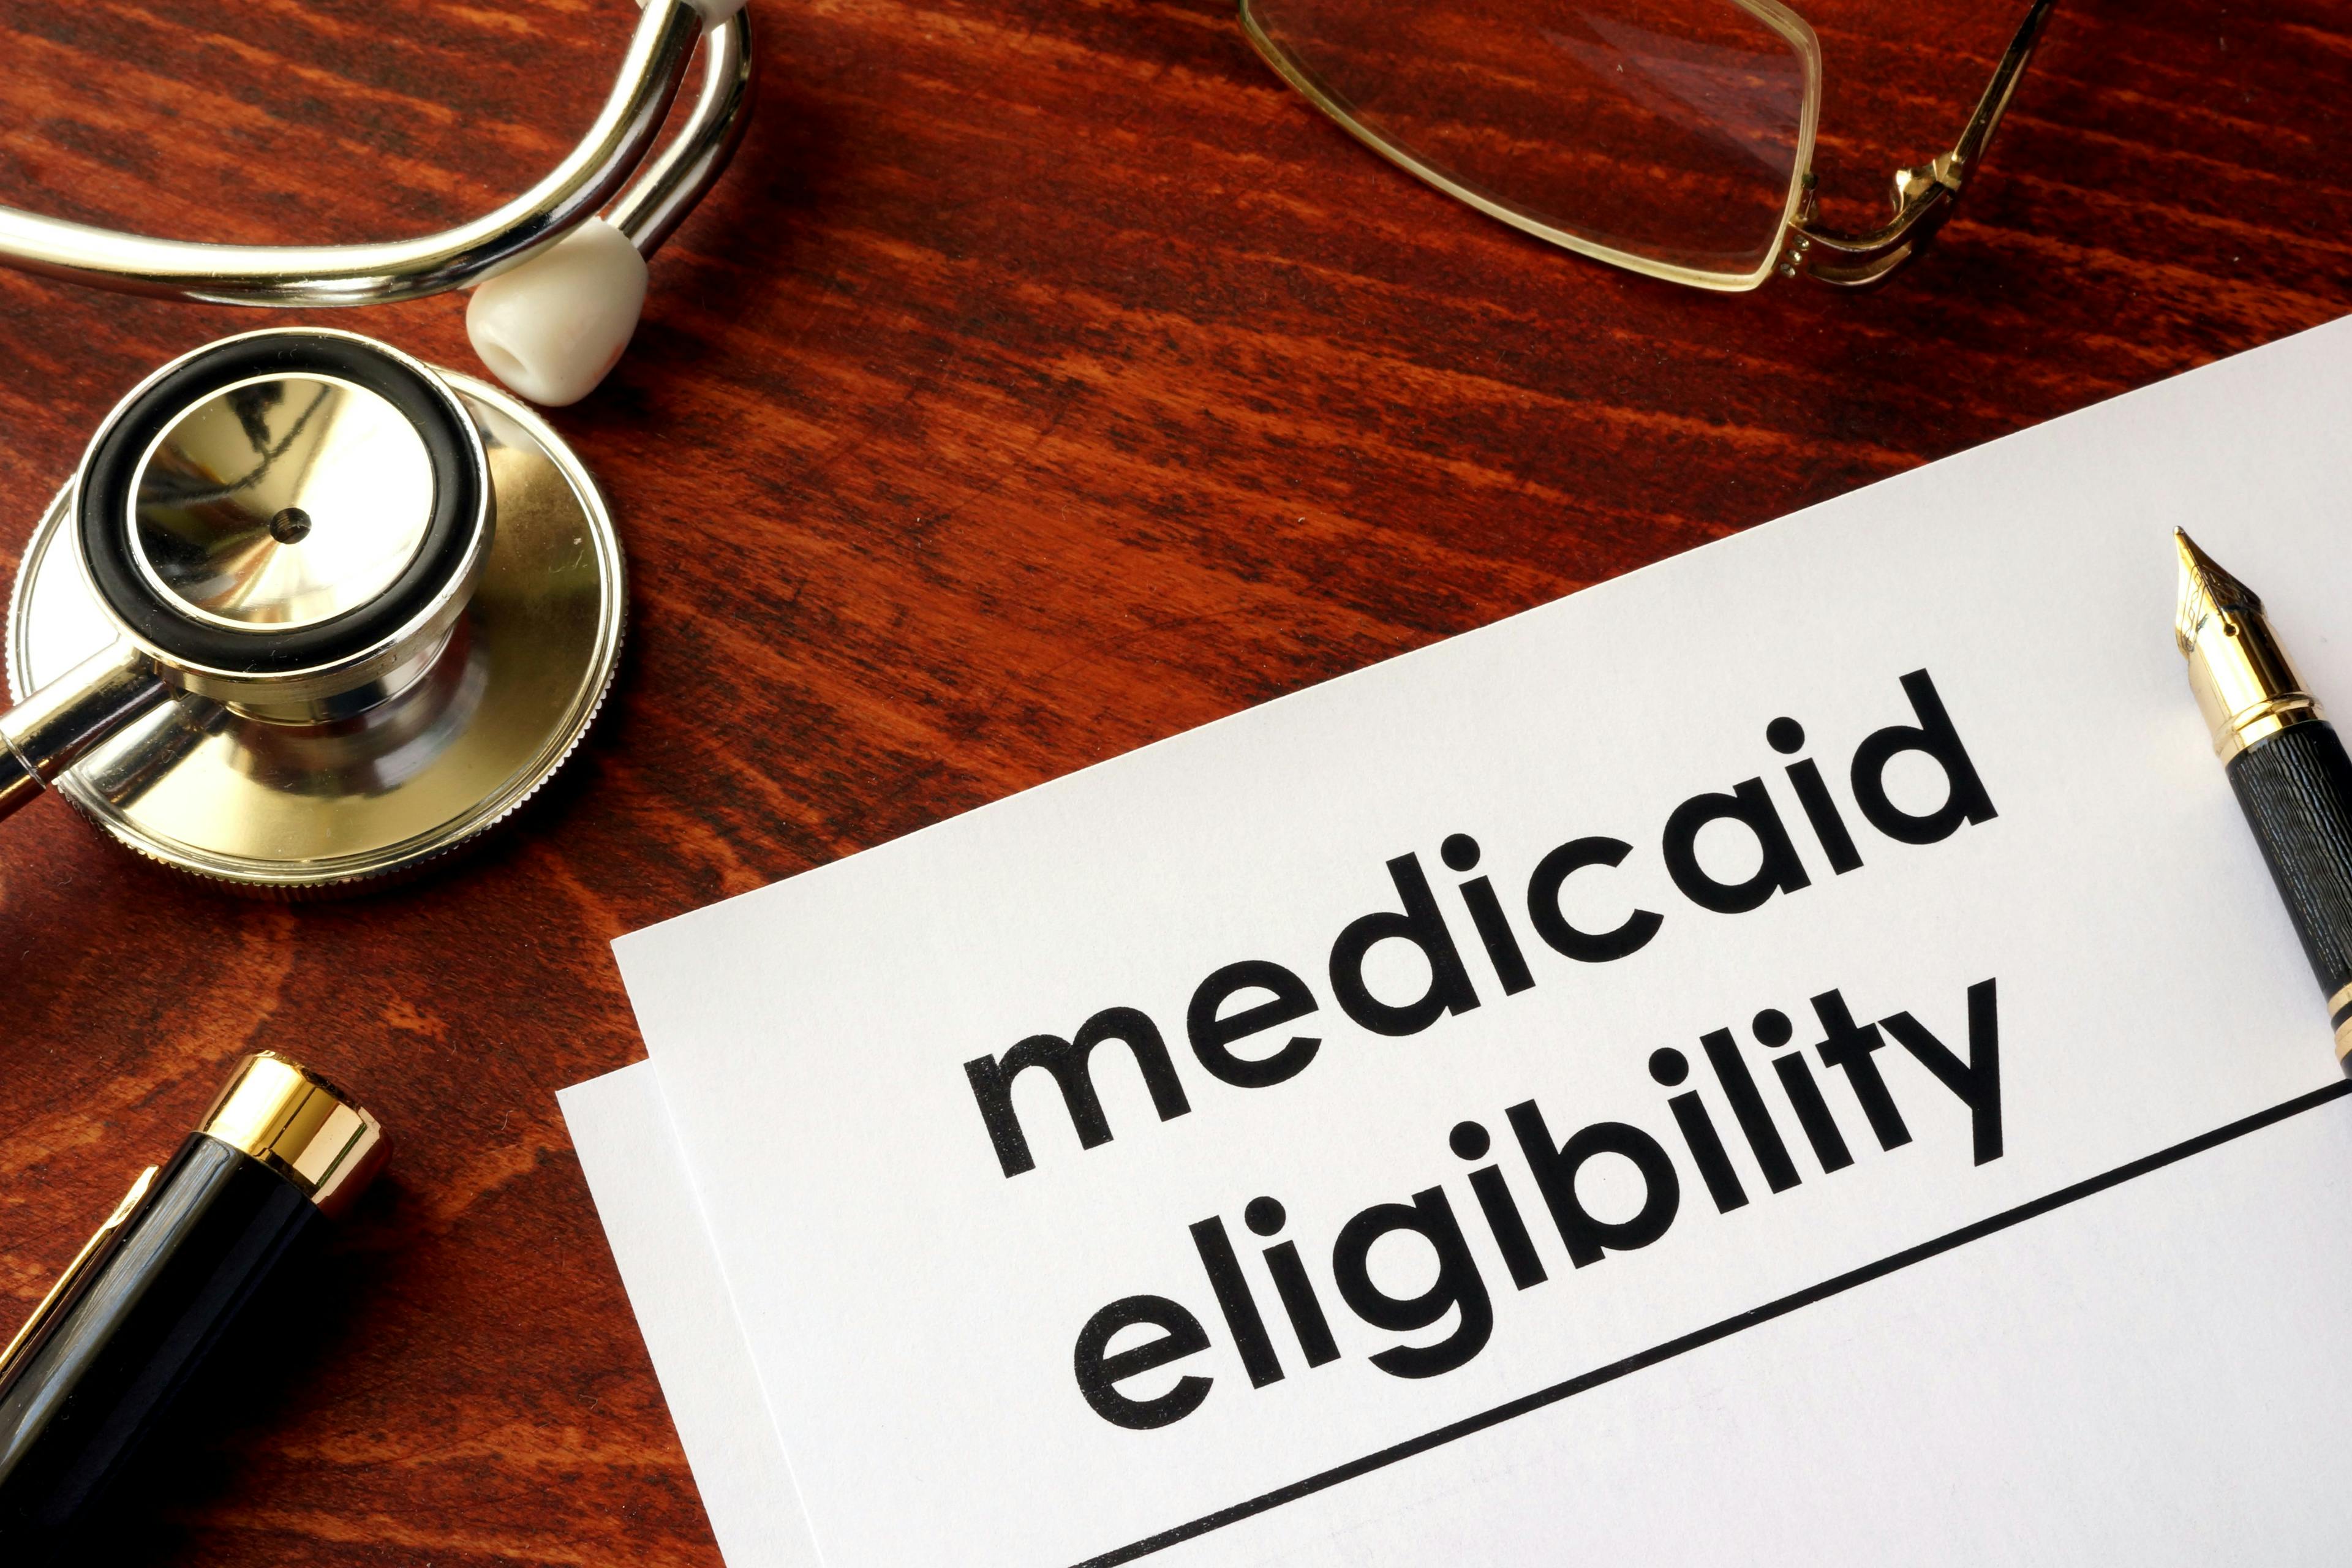 Text "Medicaid eligibility" on stationery next to stethoscope ©Vitalii Vodolazskyi-stock.adobe.com